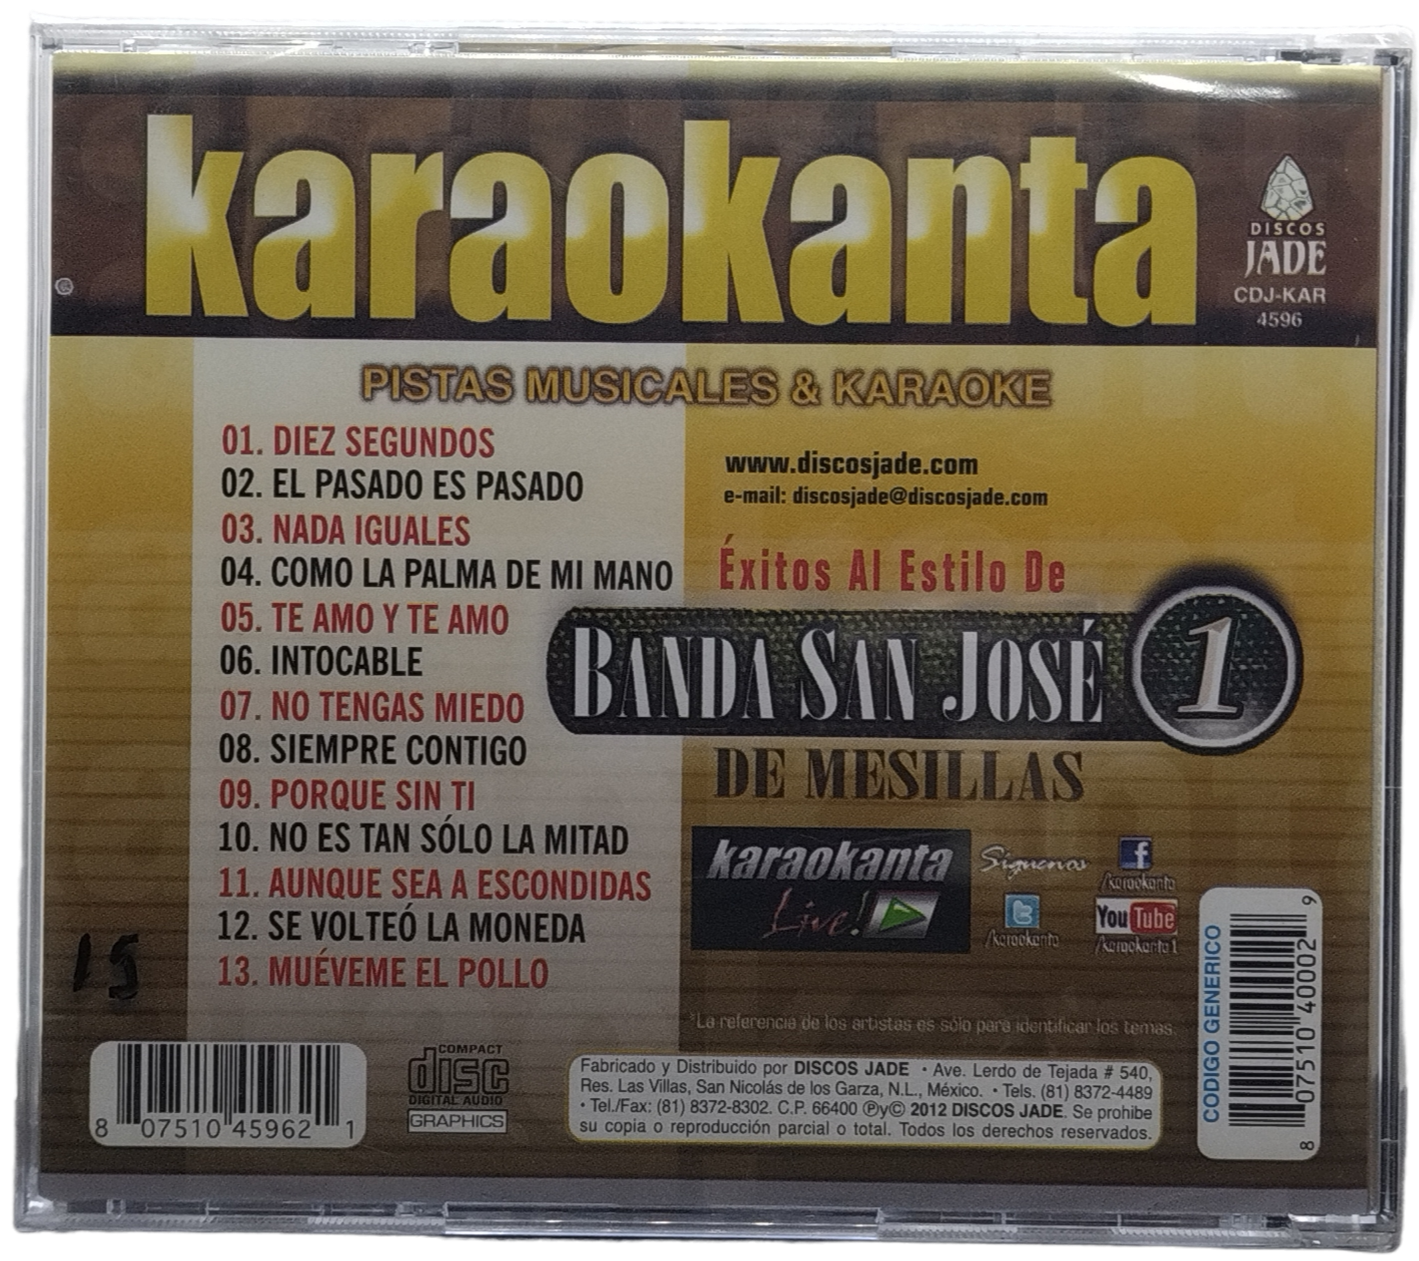 karaokanta  - canta como banda san jose